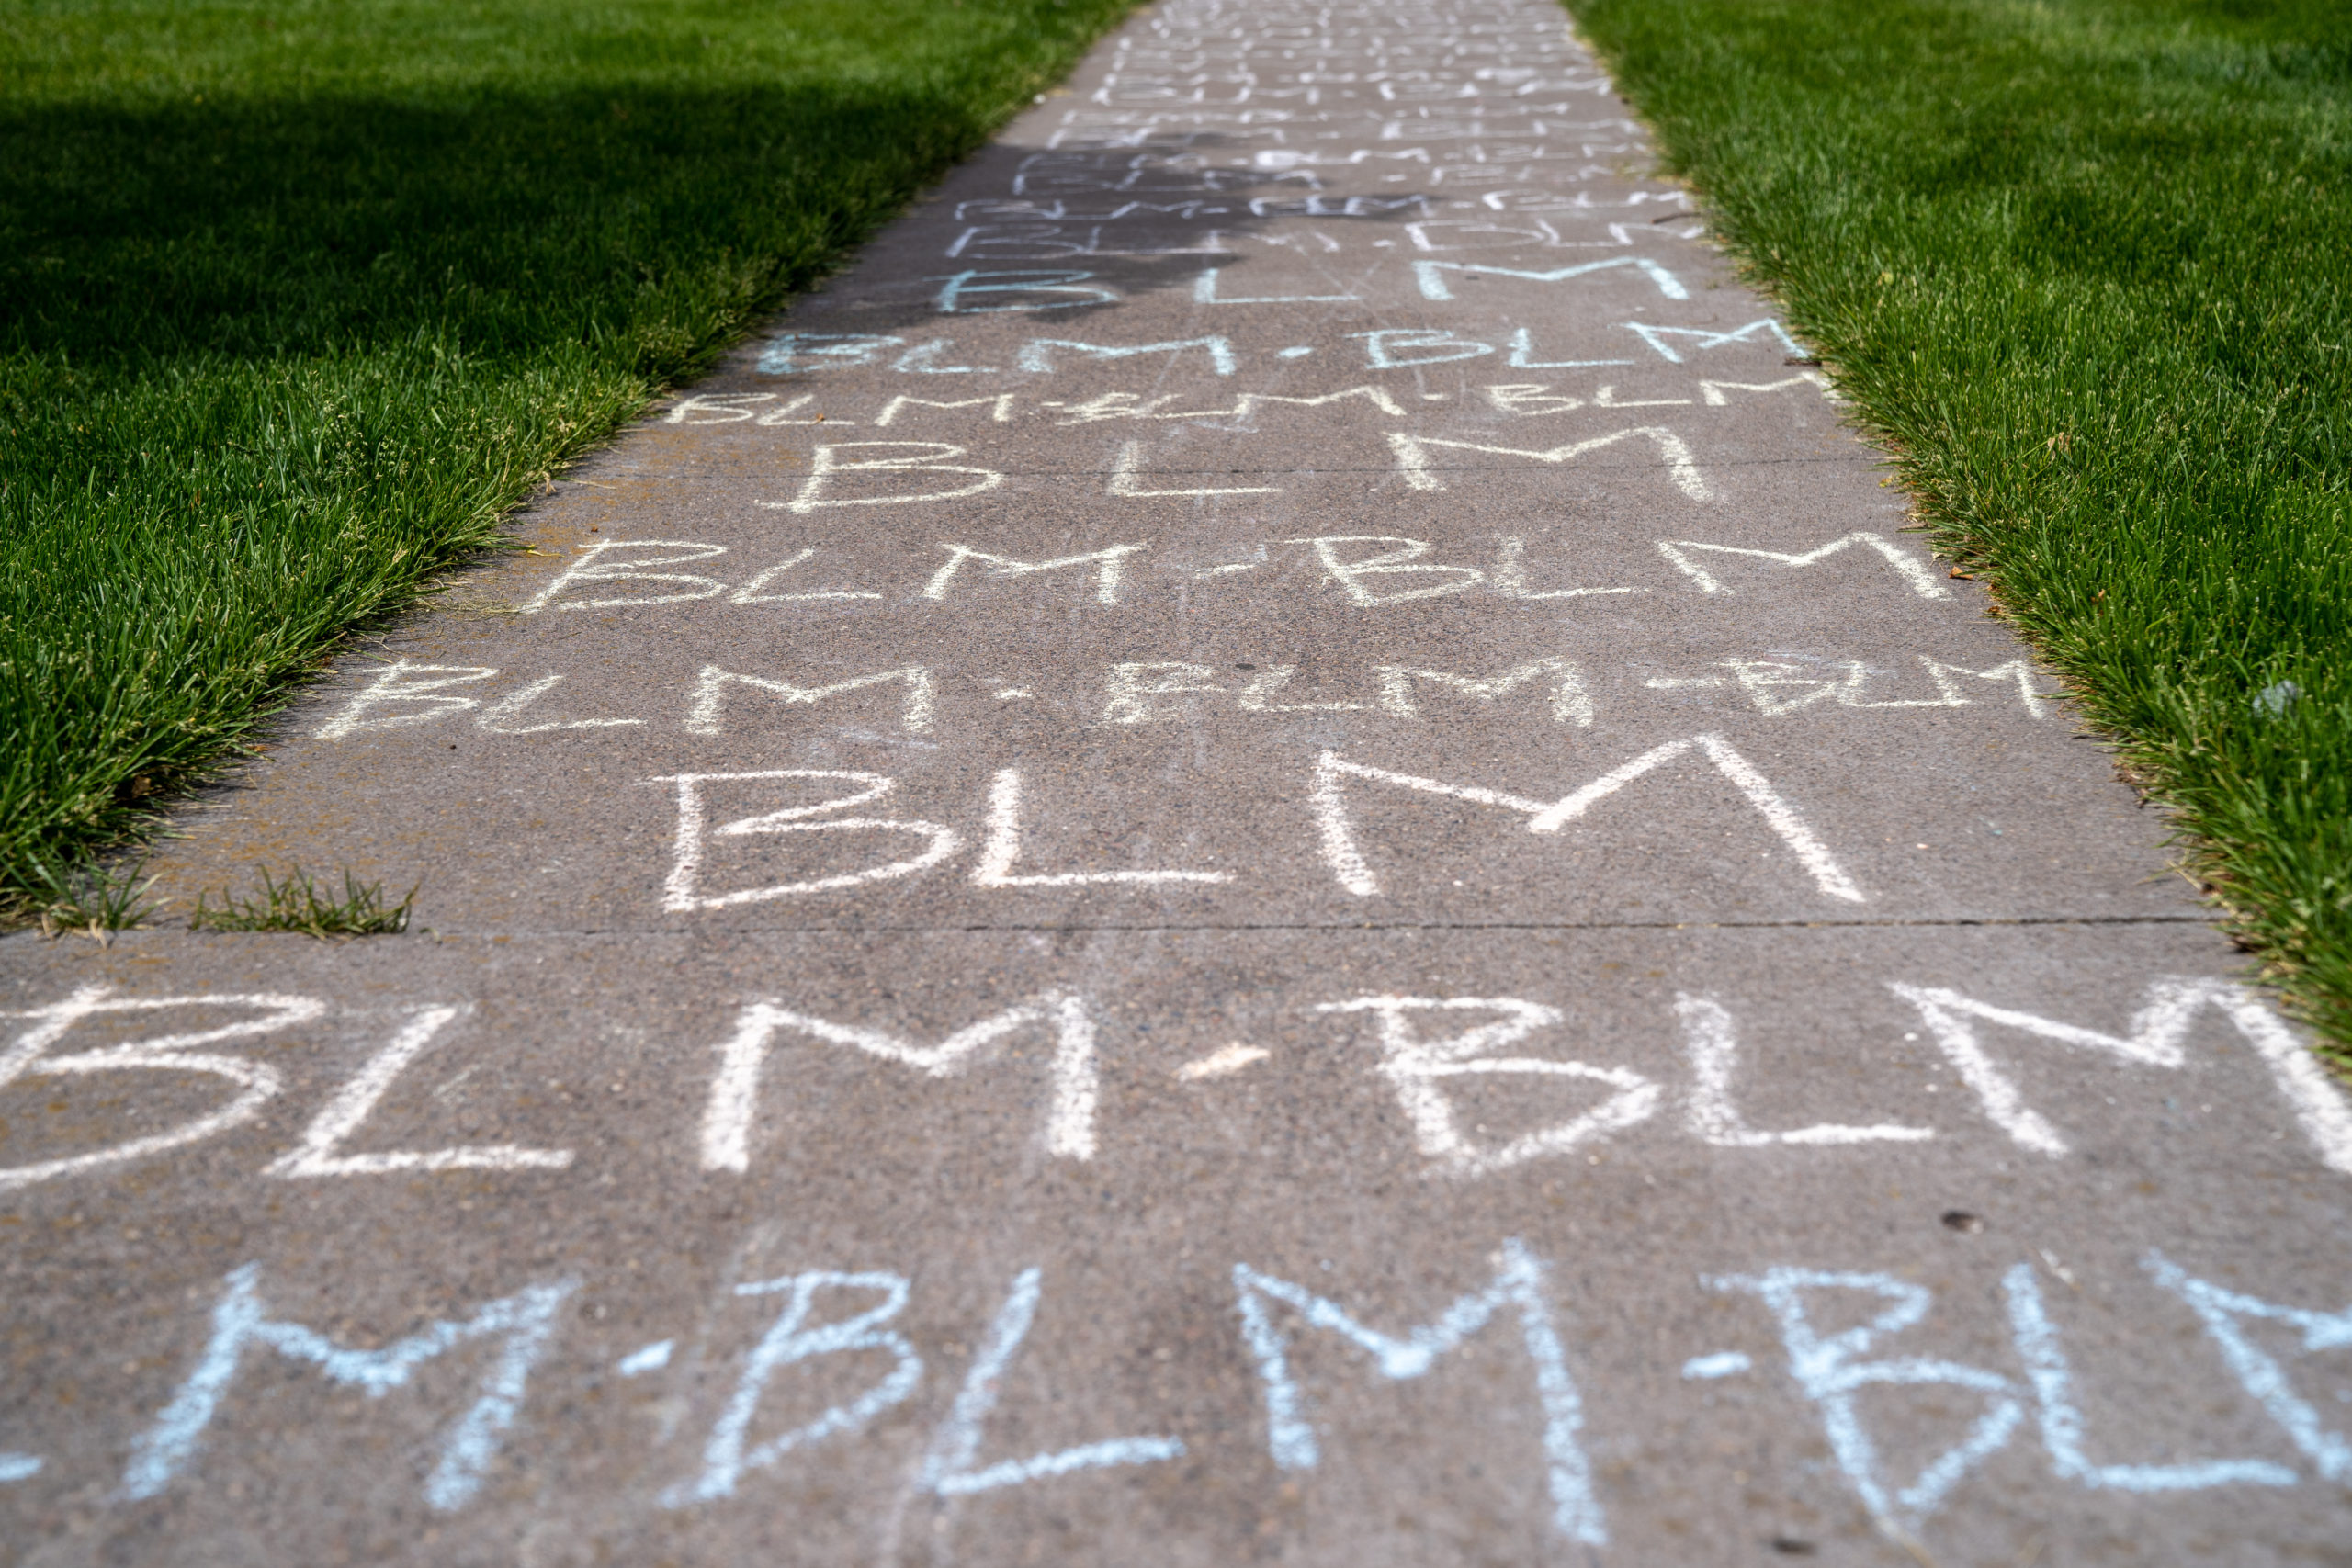 blm sidewalk chalk